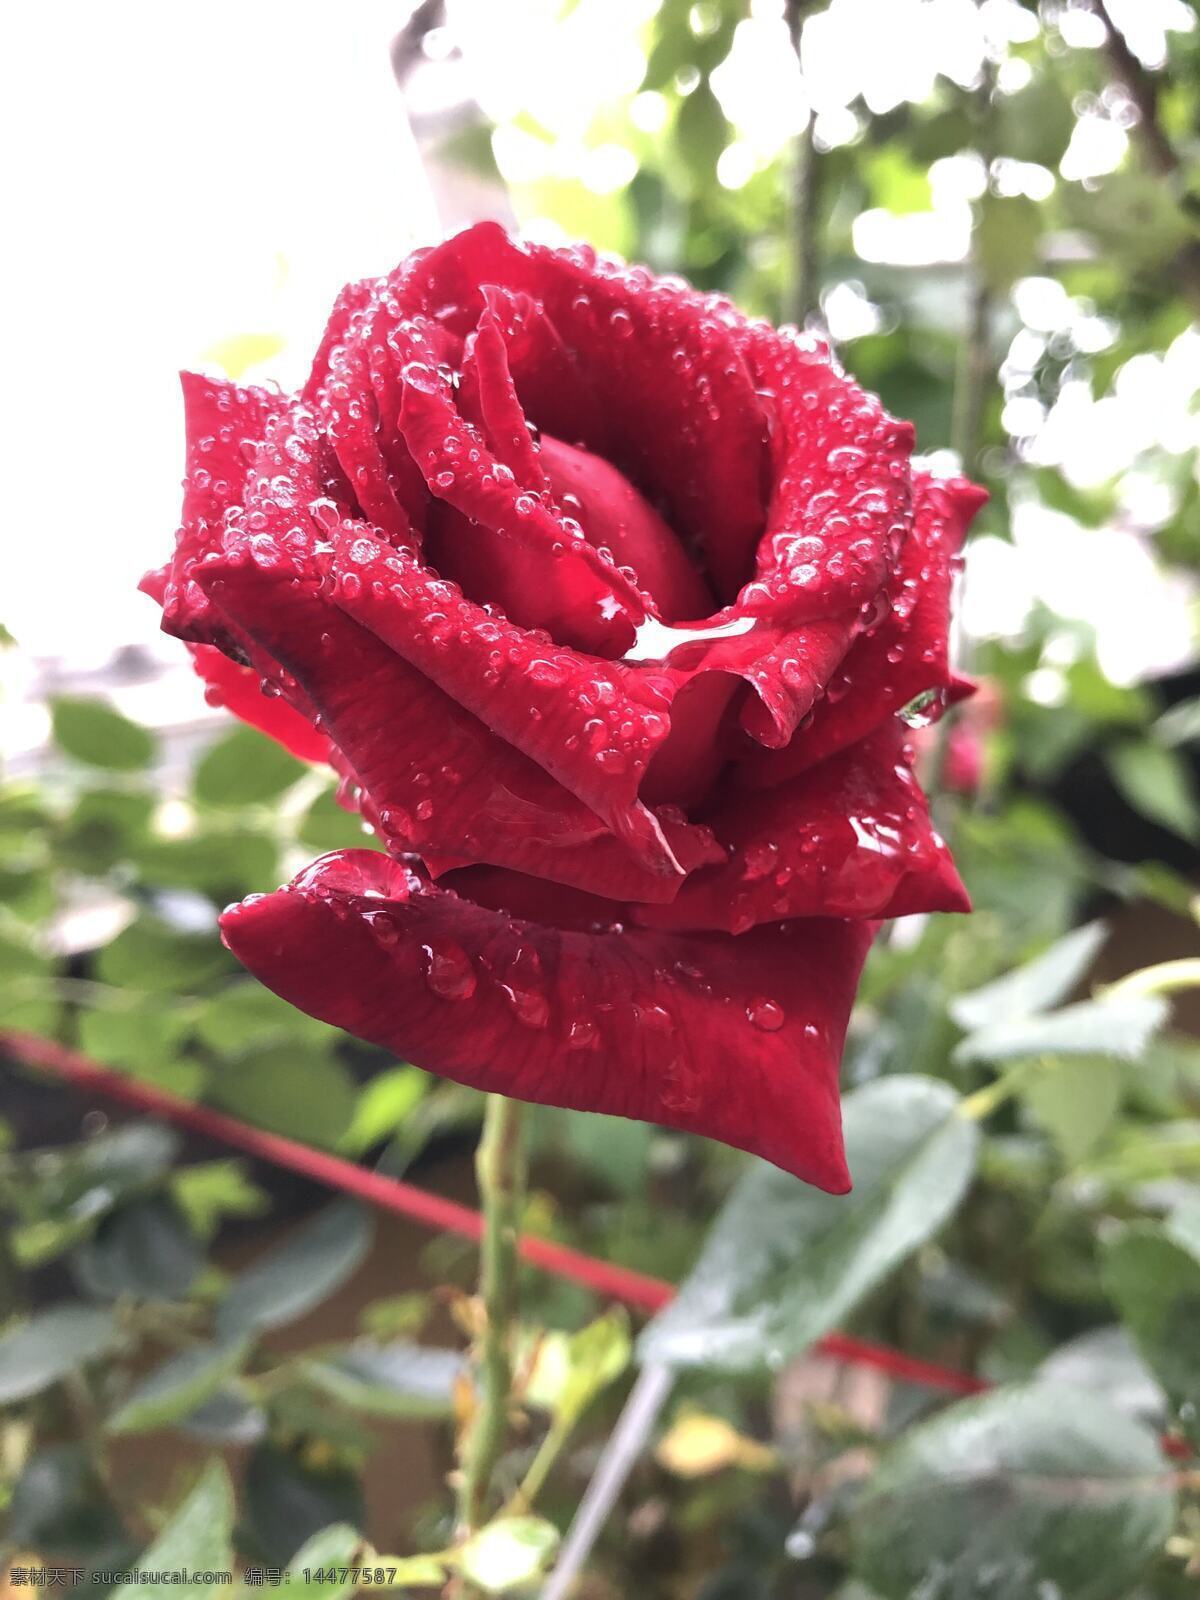 雨后红玫瑰 雨后 红玫瑰 晶莹的水珠 动感的红玫瑰 自然景观